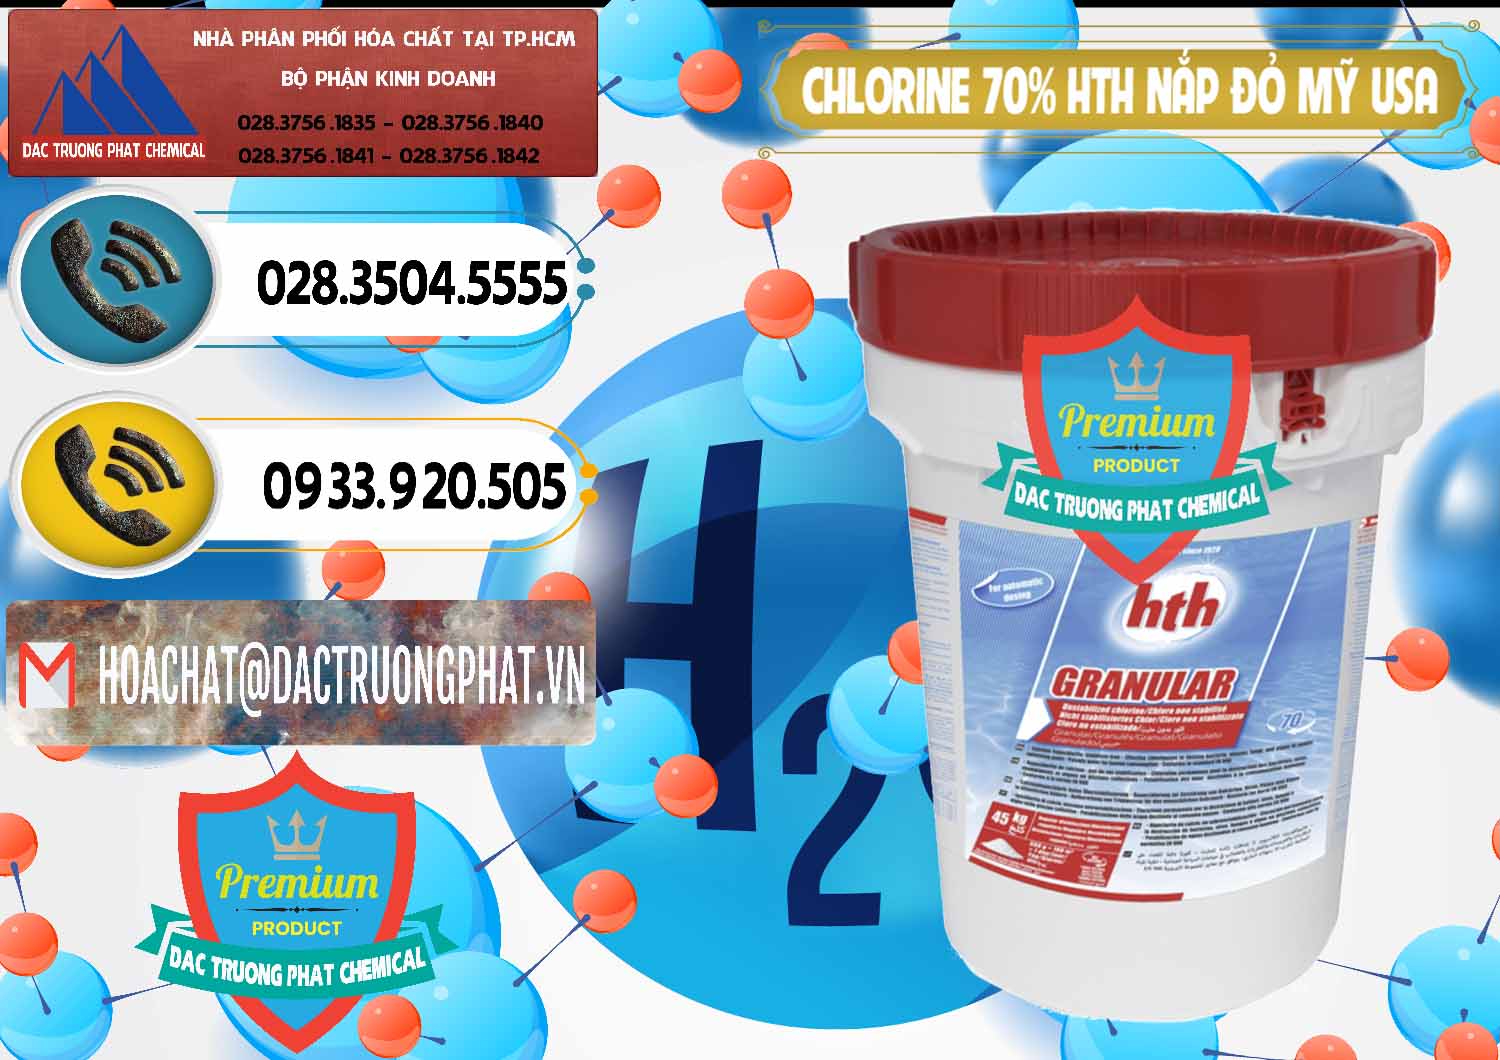 Chuyên kinh doanh & bán Clorin – Chlorine 70% HTH Nắp Đỏ Mỹ Usa - 0244 - Công ty bán ( phân phối ) hóa chất tại TP.HCM - hoachatdetnhuom.vn